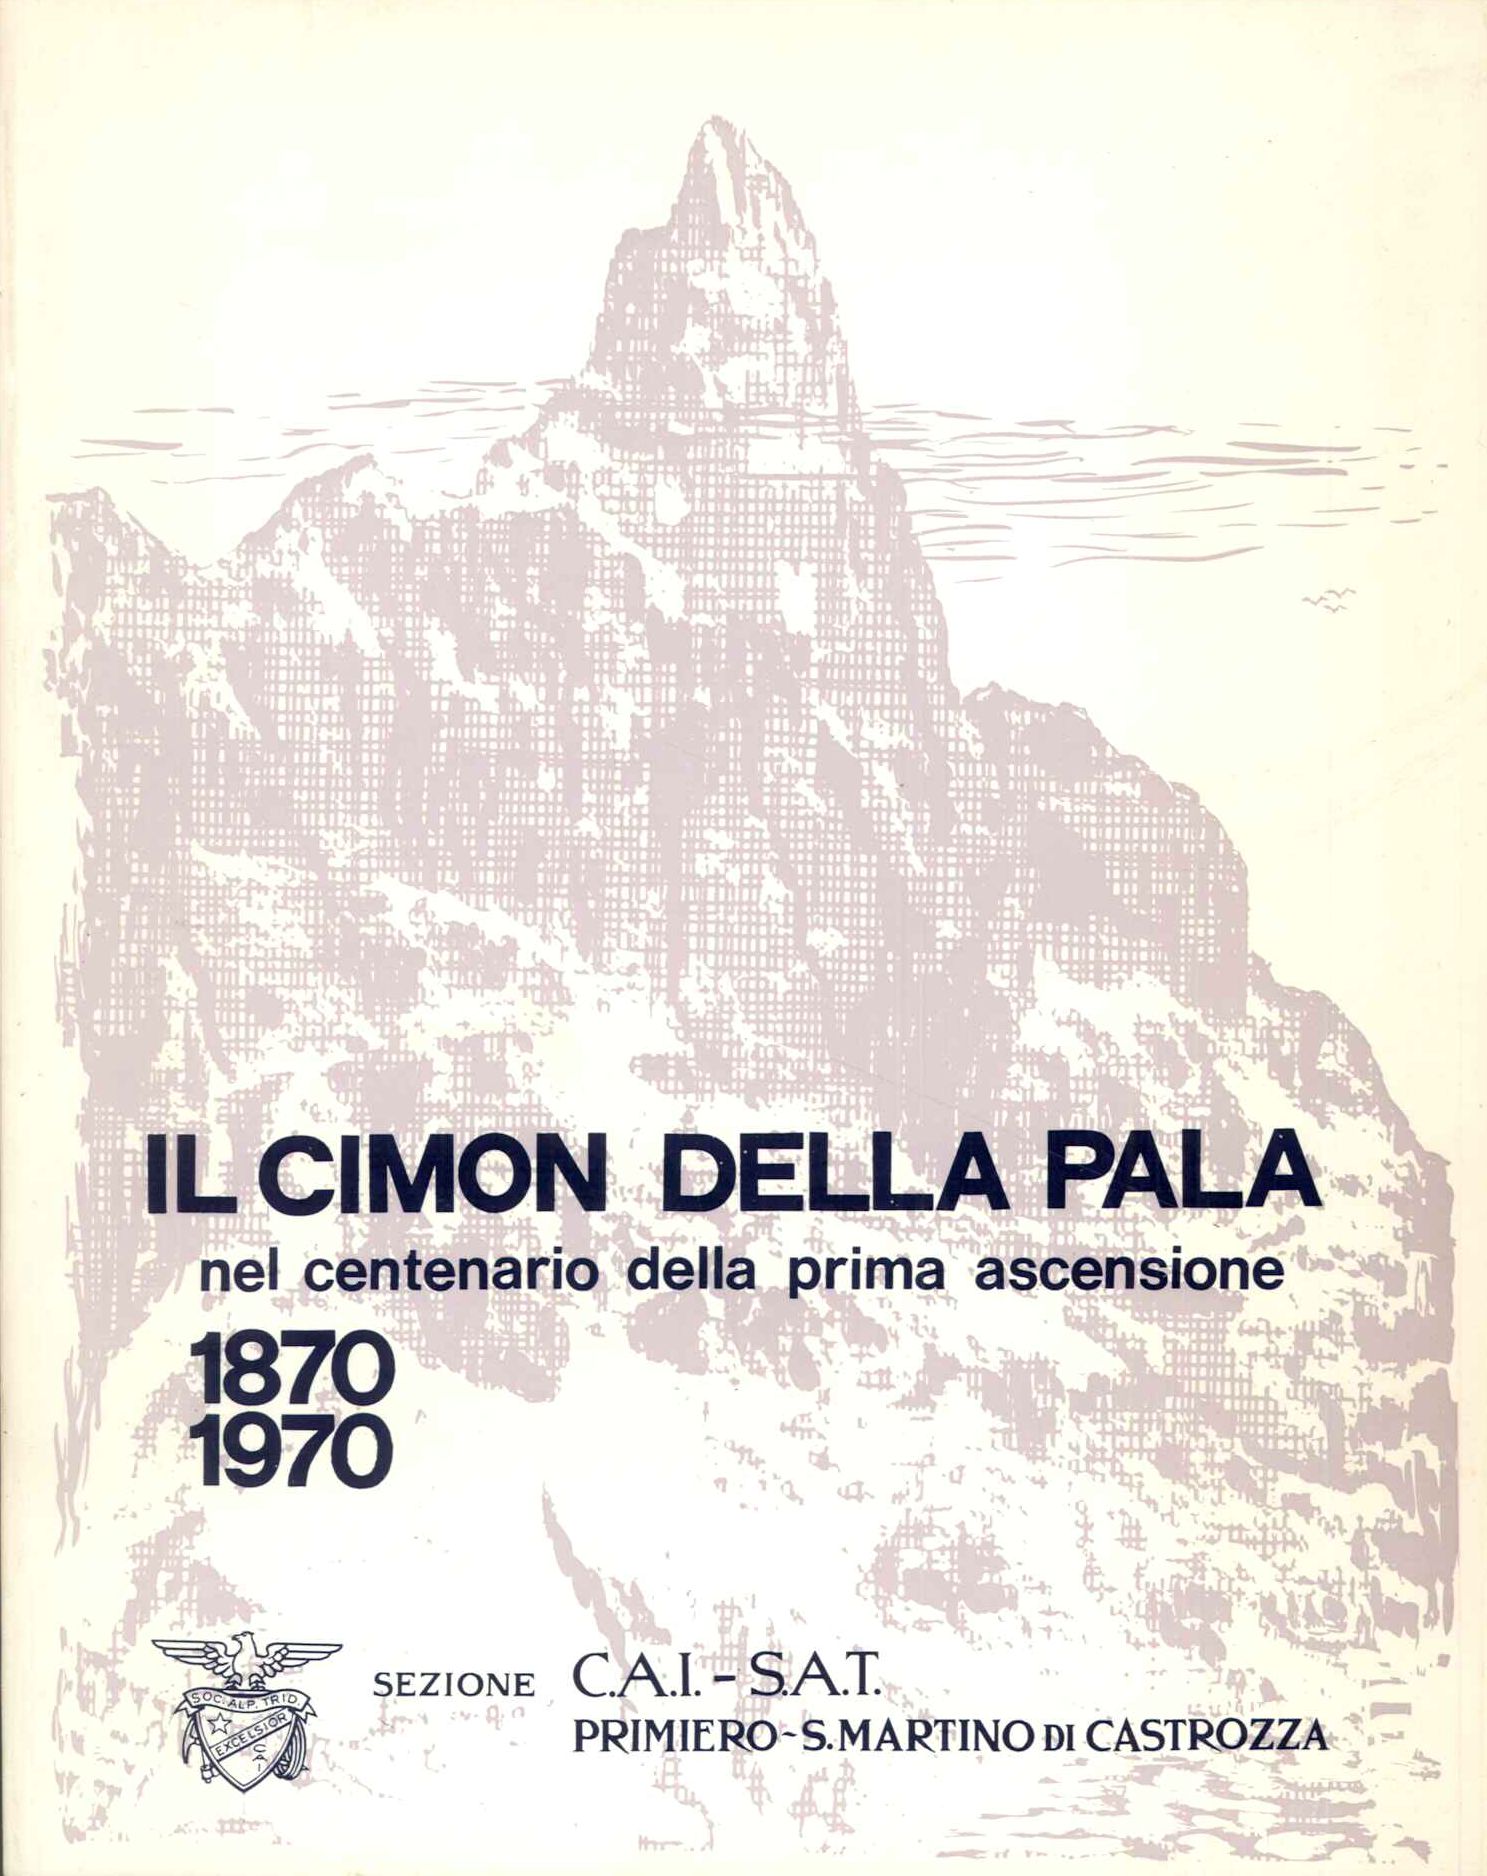 Il Cimon della Pala nel centenario della prima ascensione